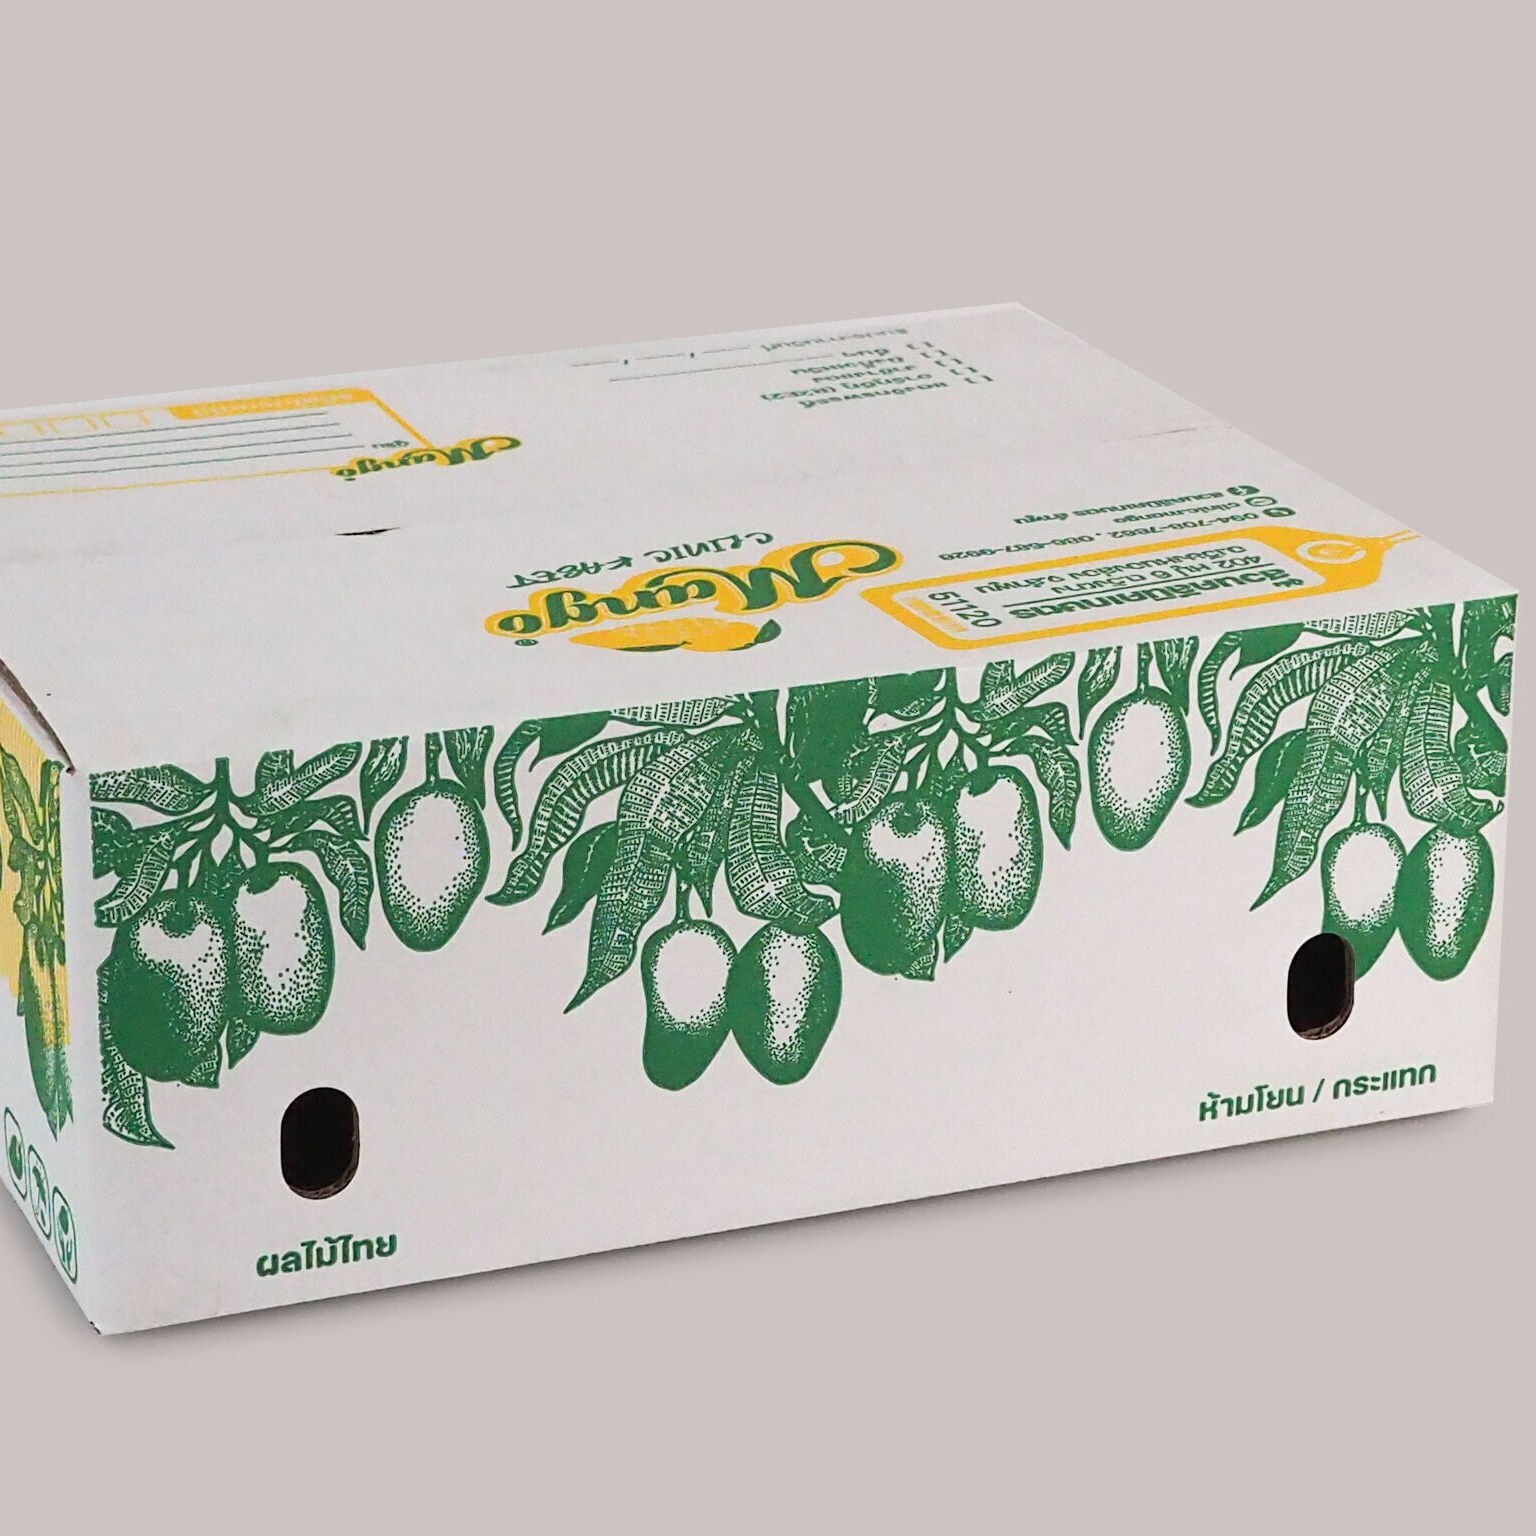 กล่องมะม่วง5กก,กล่องลูกฟูกสำหรับใส่กล่องมะม่วงสวนคลินิค,กล่องลังกล่องมะม่วงสวนคลินิค,ลังกระดาษสำหรับมะม่วงสวนคลินิคเกษตร